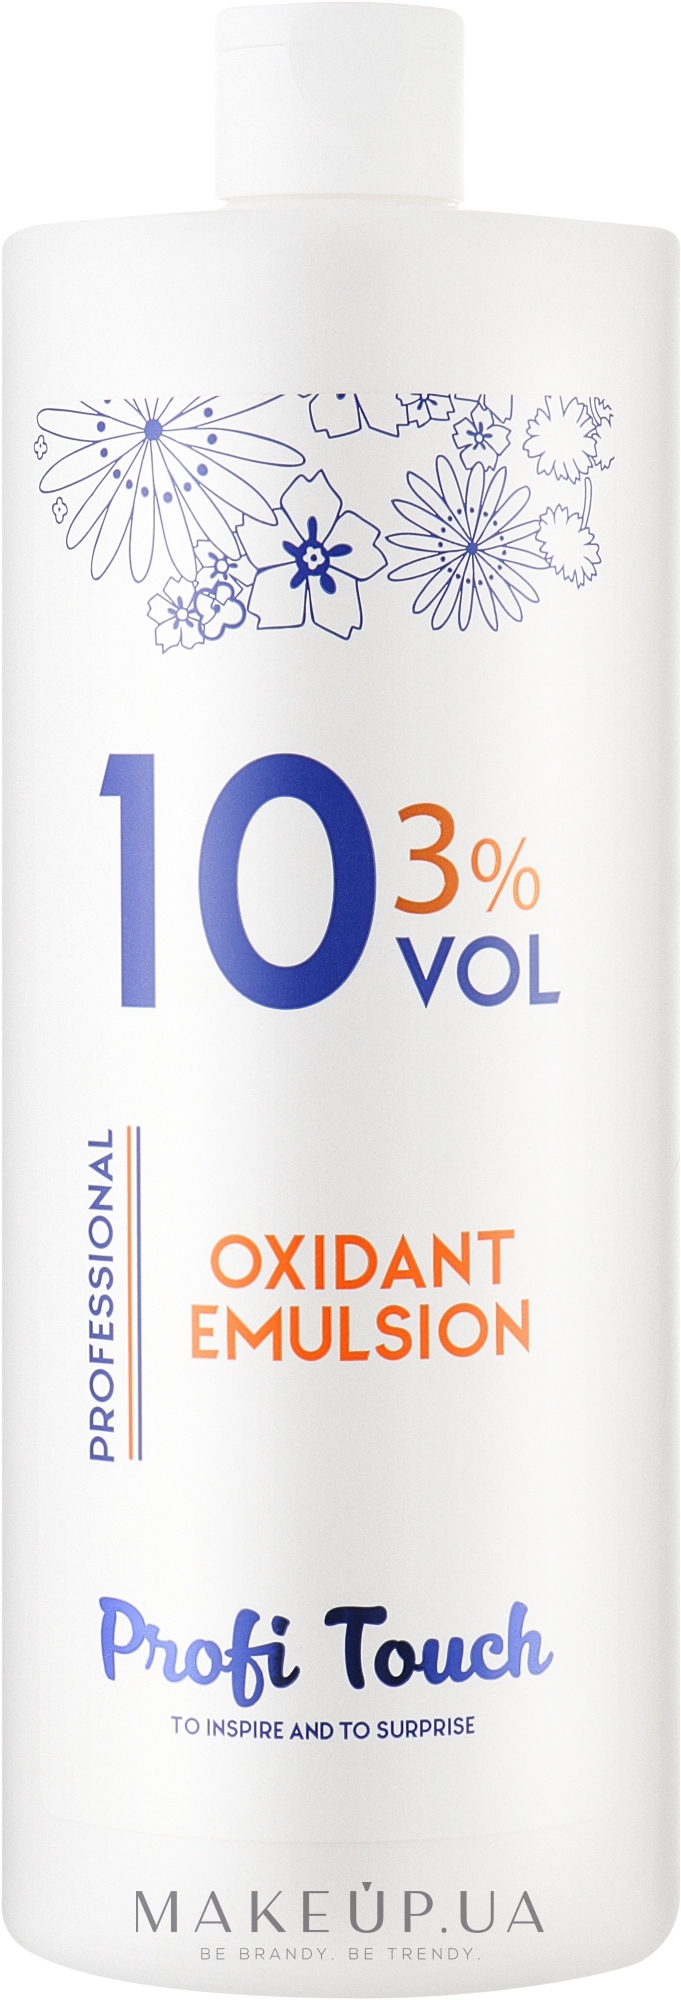 Гель-окислювач 10 vol 3% - Profi Touch Oxidant Emulsion — фото 1000g